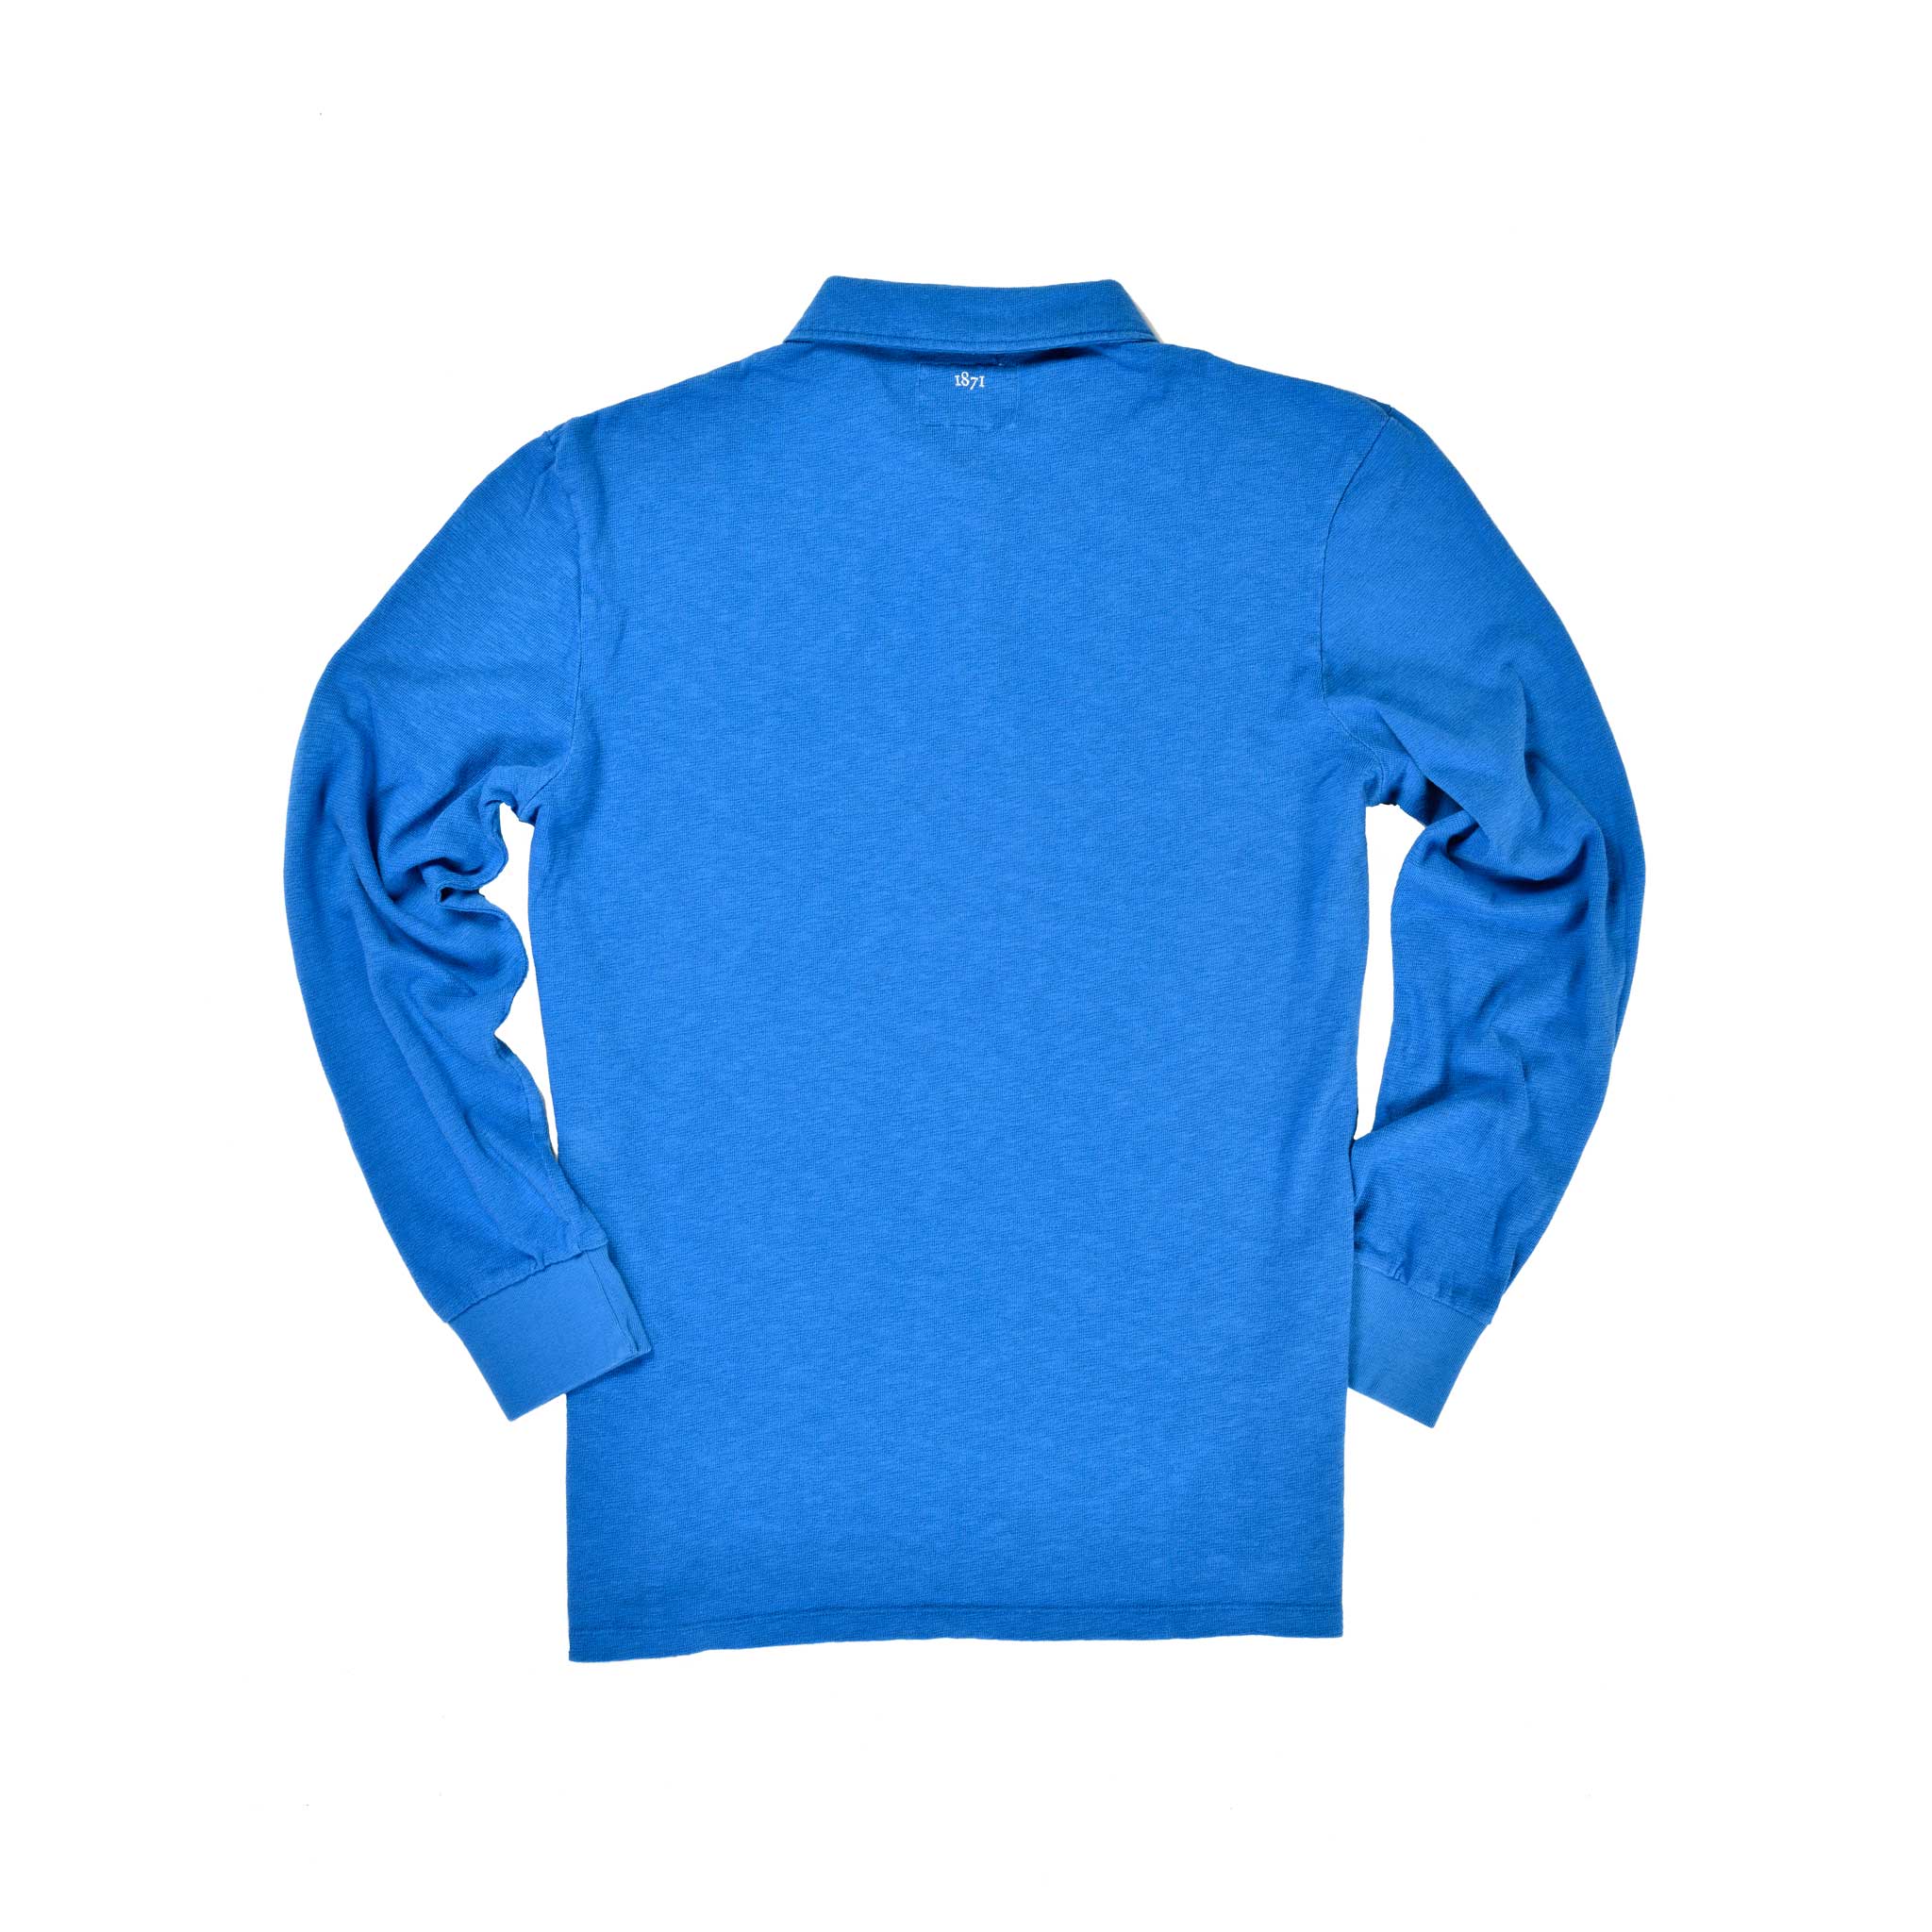 Royal Blue Long Sleeve 1871 Polo Shirt_Back